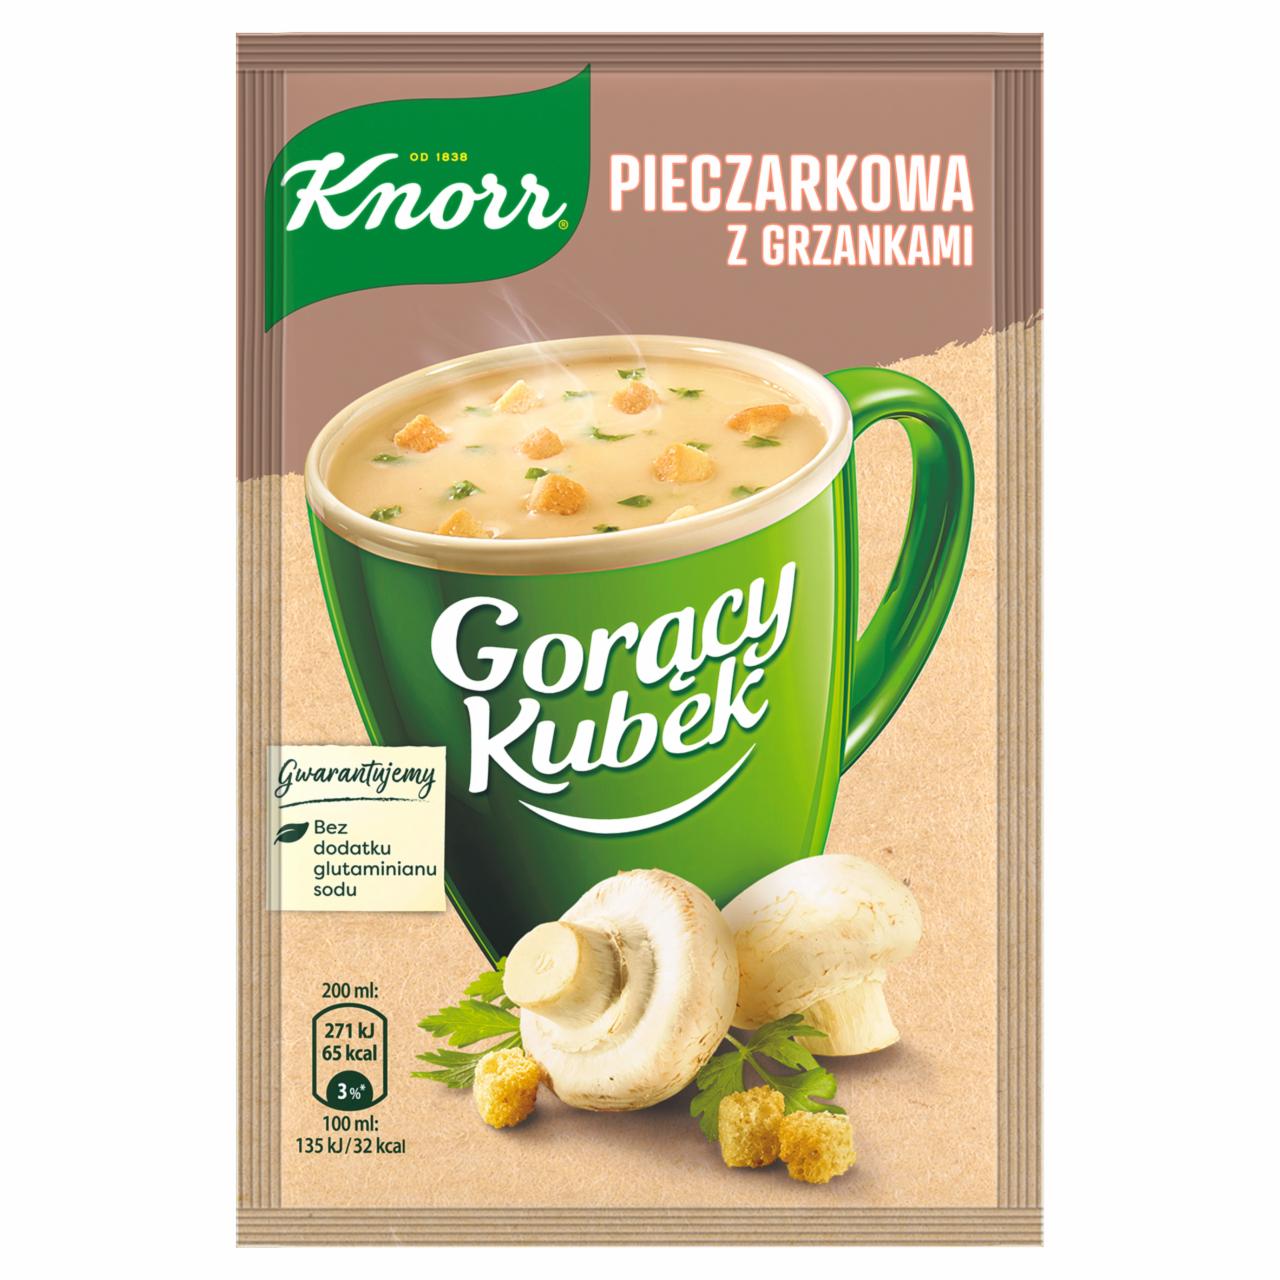 Zdjęcia - Knorr Gorący Kubek Pieczarkowa z grzankami 15 g